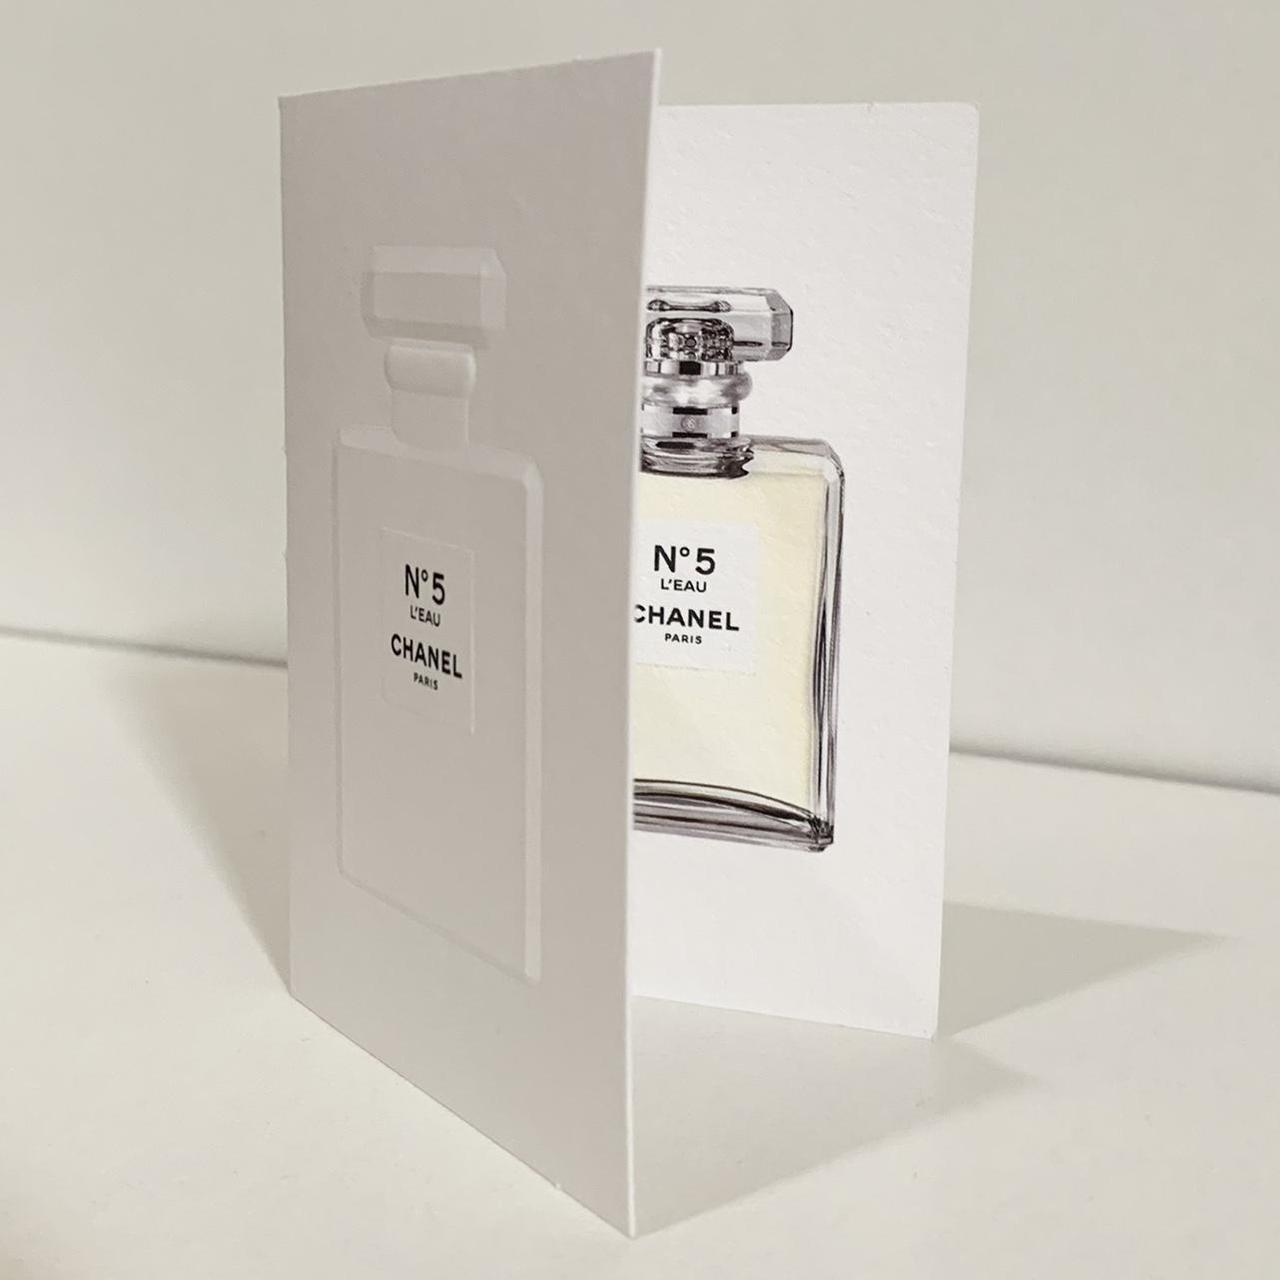 Mini Chanel perfume no 5 eau de parfum fragrance. - Depop